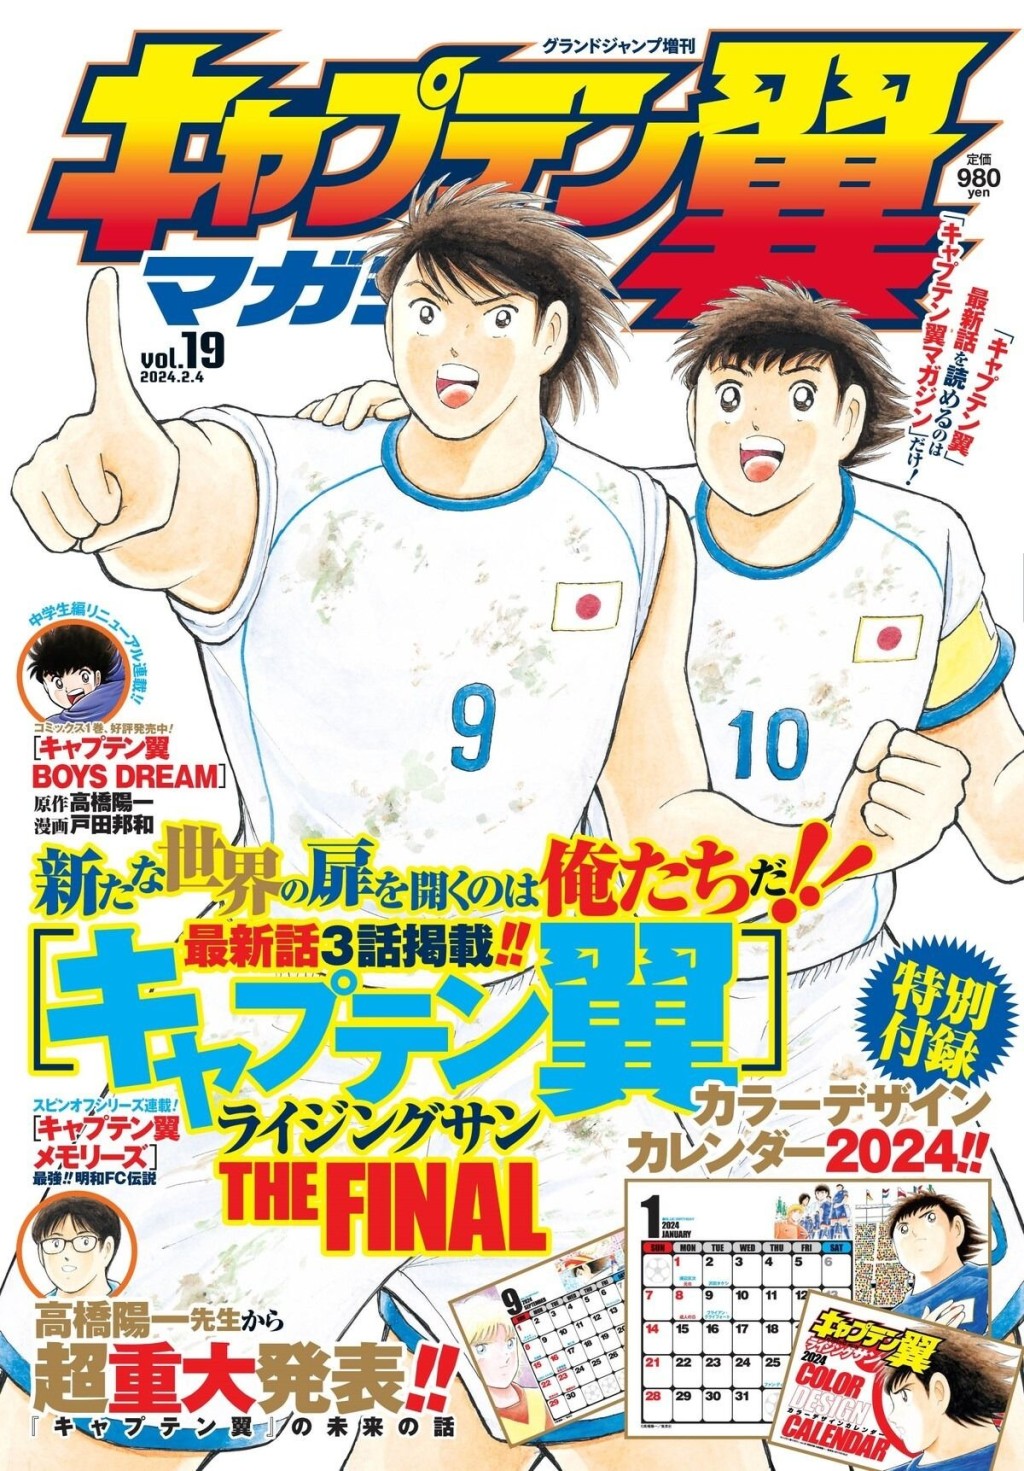 《足球小將》今年4月將結束連載。圖為《週刊少年Jump》最新一期封面